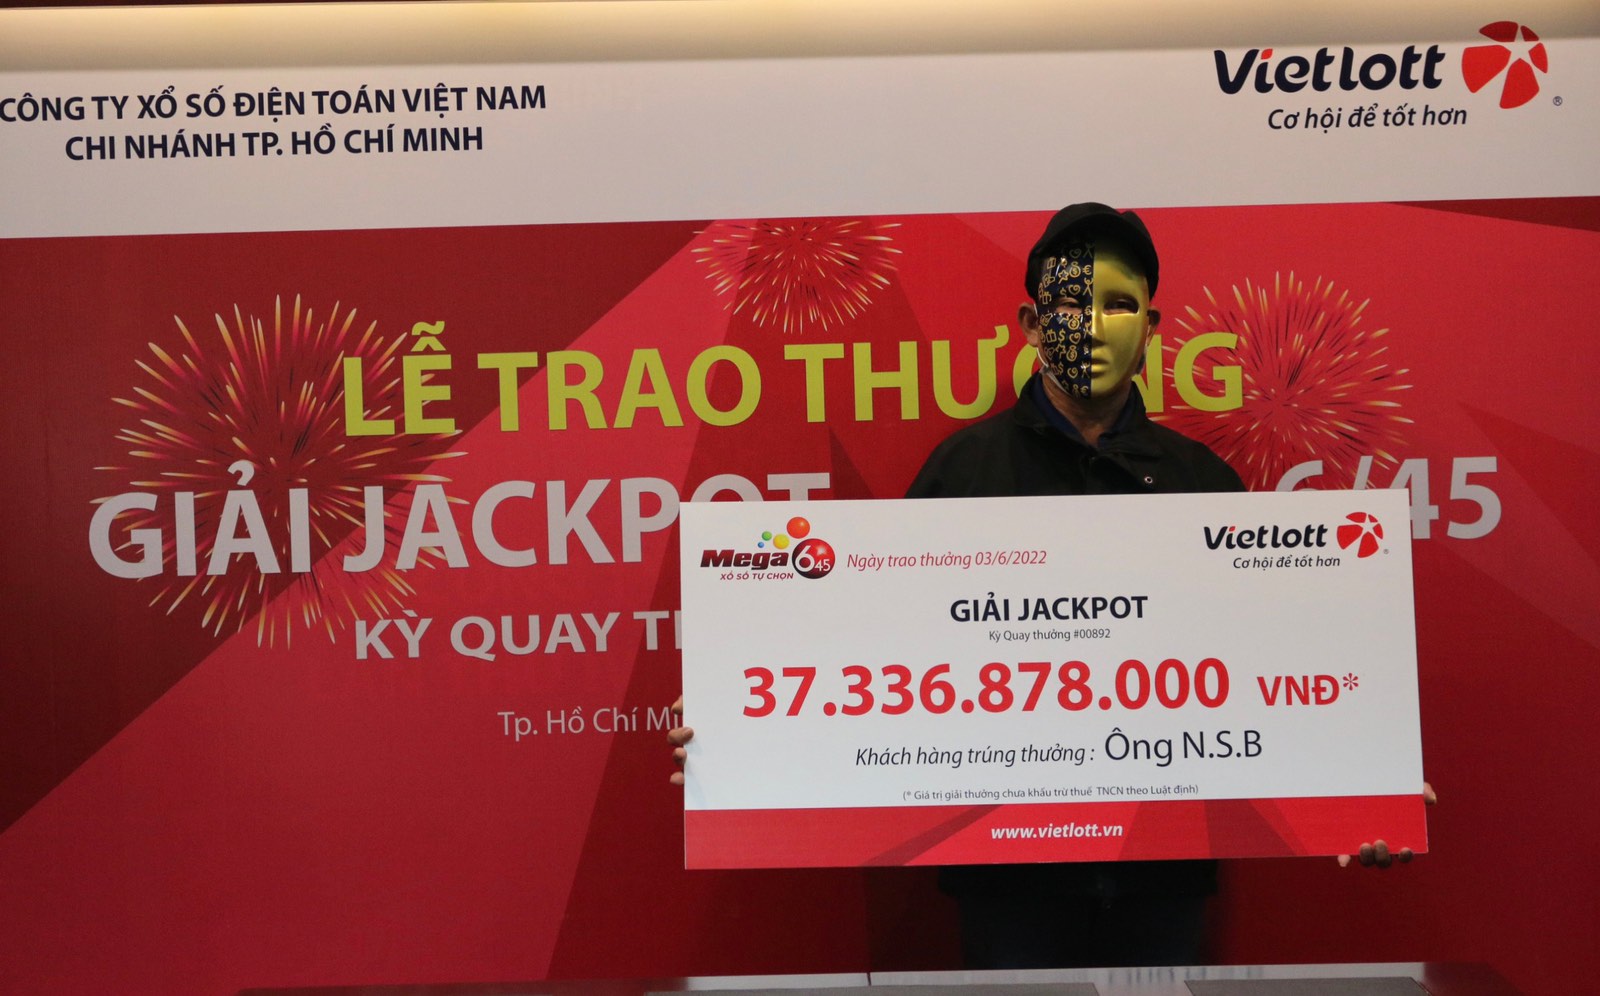 Người chơi tại Hồ Chí Minh nhận thưởng Jackpot Mega 6/45 trị giá hơn 37.3 tỷ đồng